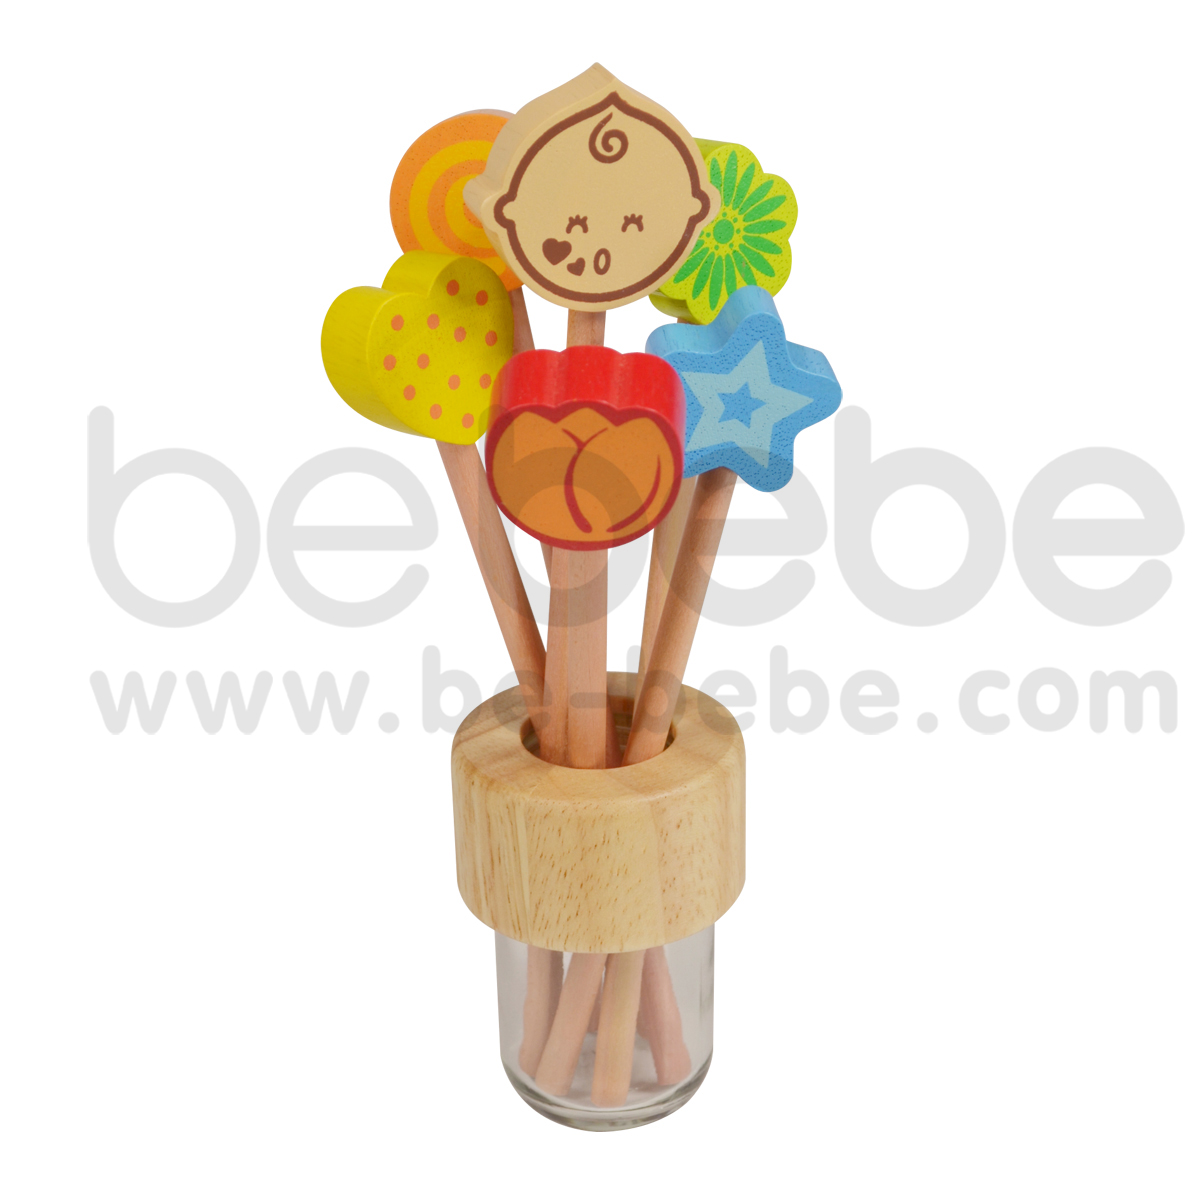 bebebe : ดินสอS ดอกกุหลาบ/ส้ม